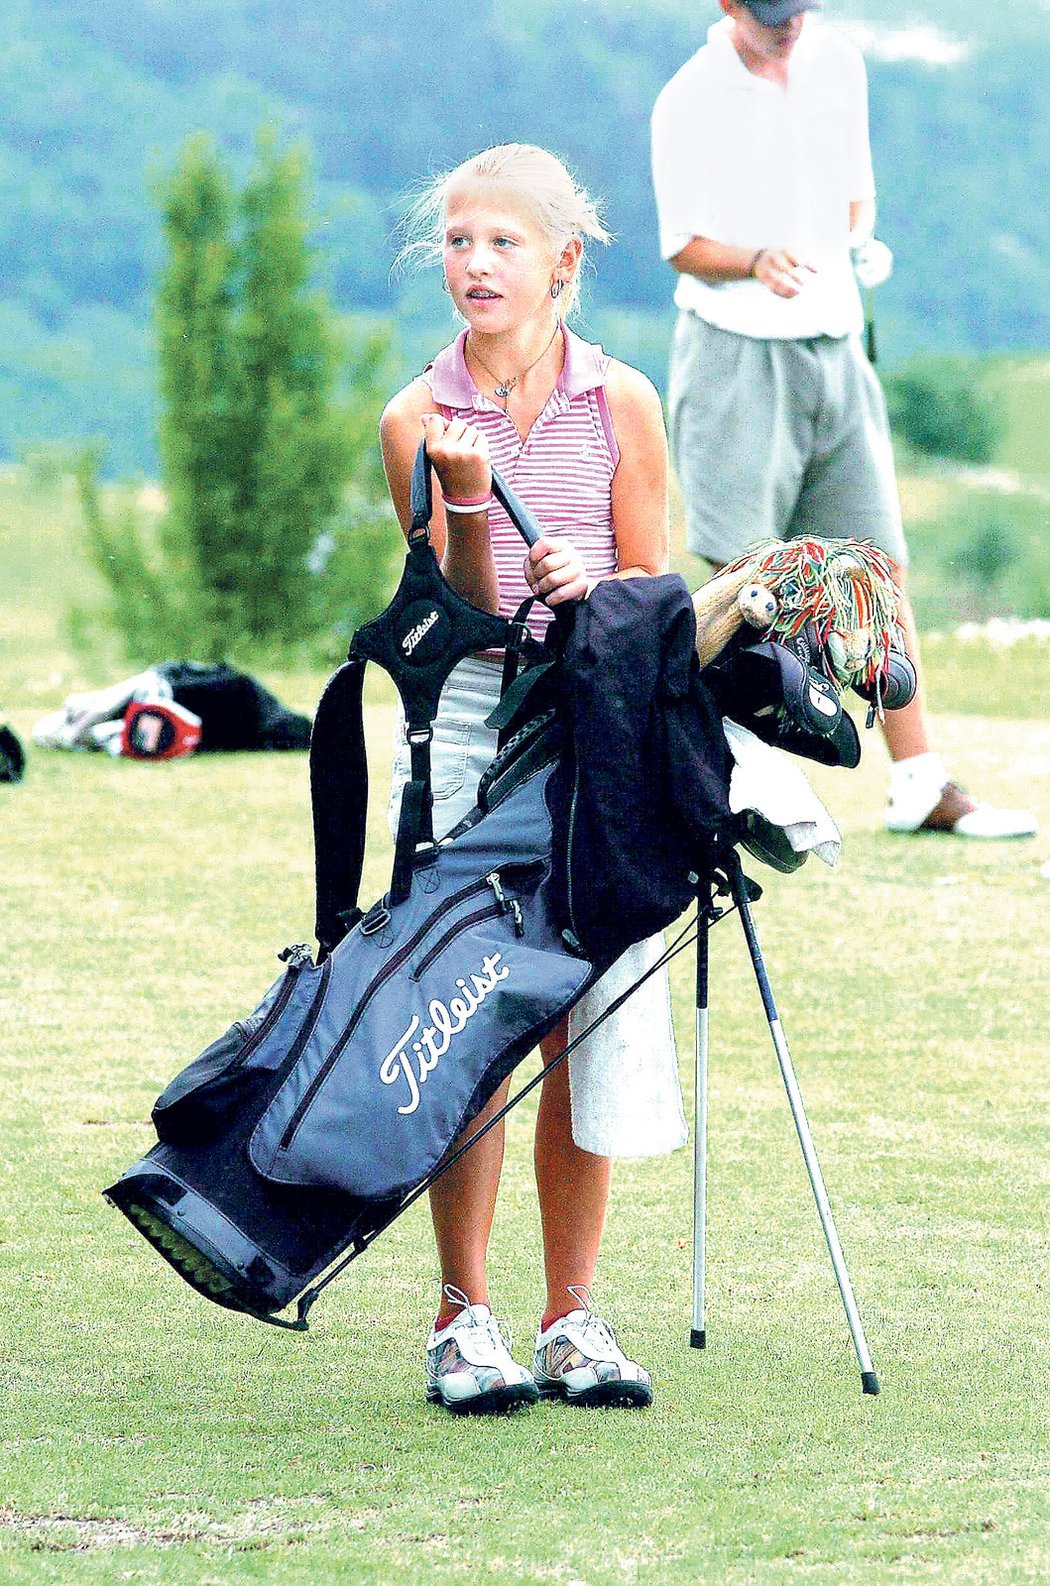 Kordová na golfovém hřišti ve dvanácti letech